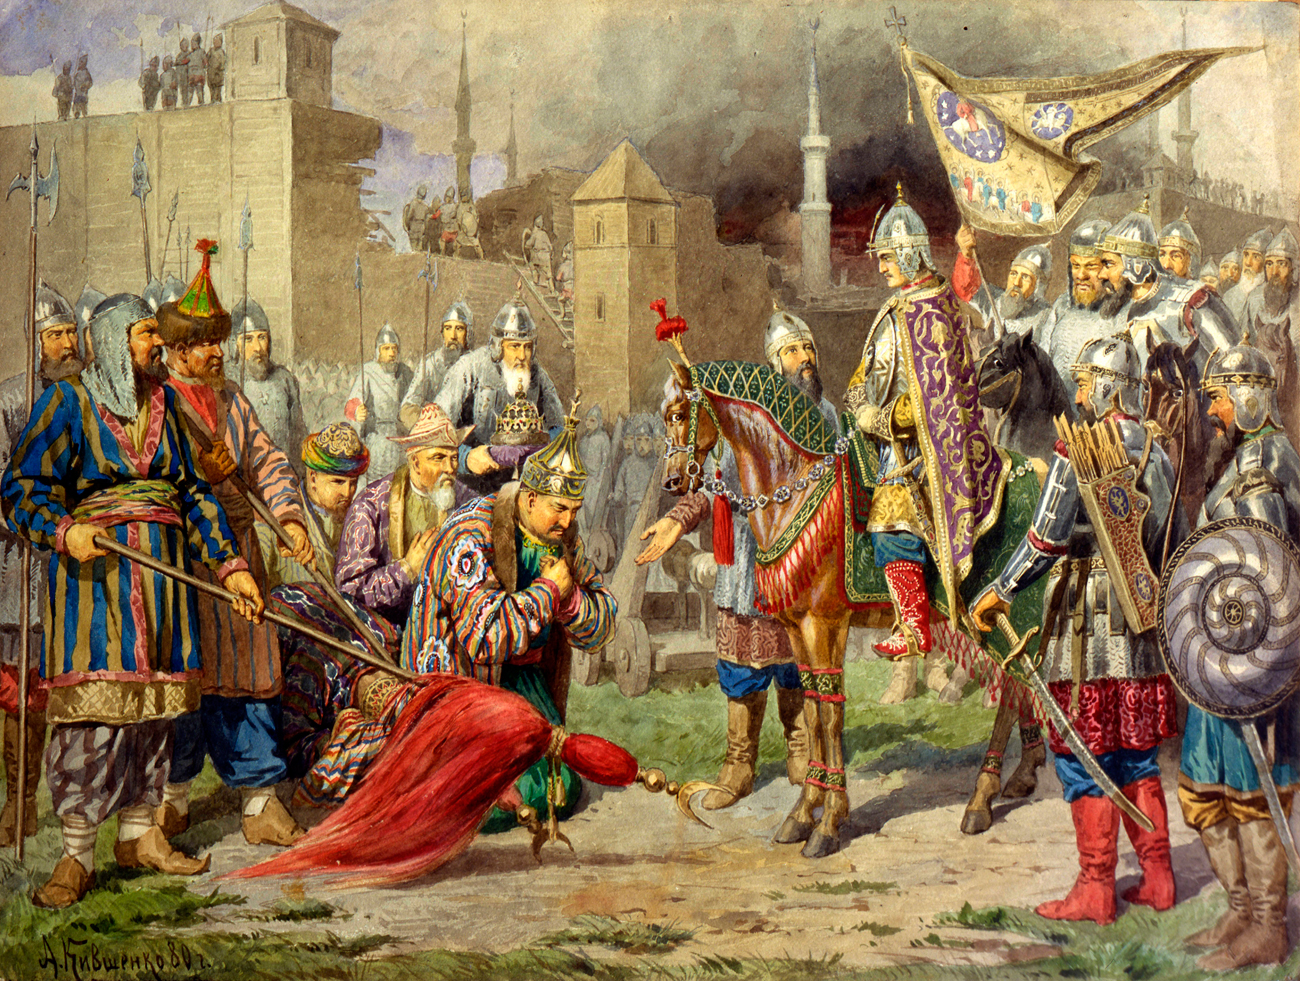 Skozi svojo celotno vladavino je Ivan Grozni širil ozemlje svoje države. Med drugim je njegova država leta 1552 osvojila Kazan, ki so mu prej vladali Tatari v okviru Kazanskega kanata. 